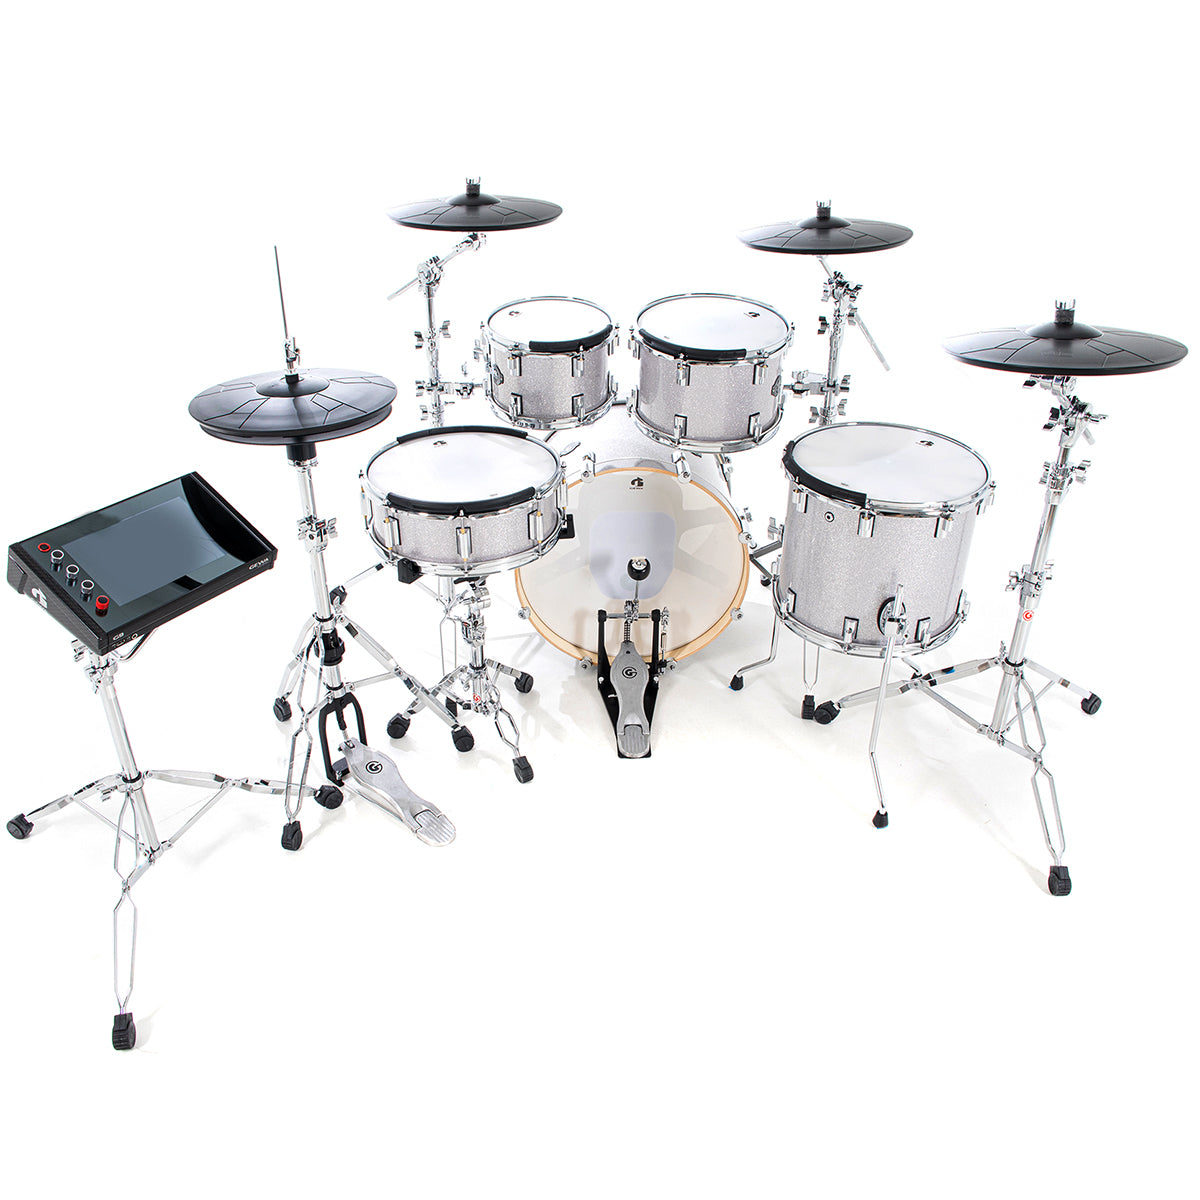 GEWA G9 Pro 5 SE Electronic Drum Set - Silver Sparkle, View 4